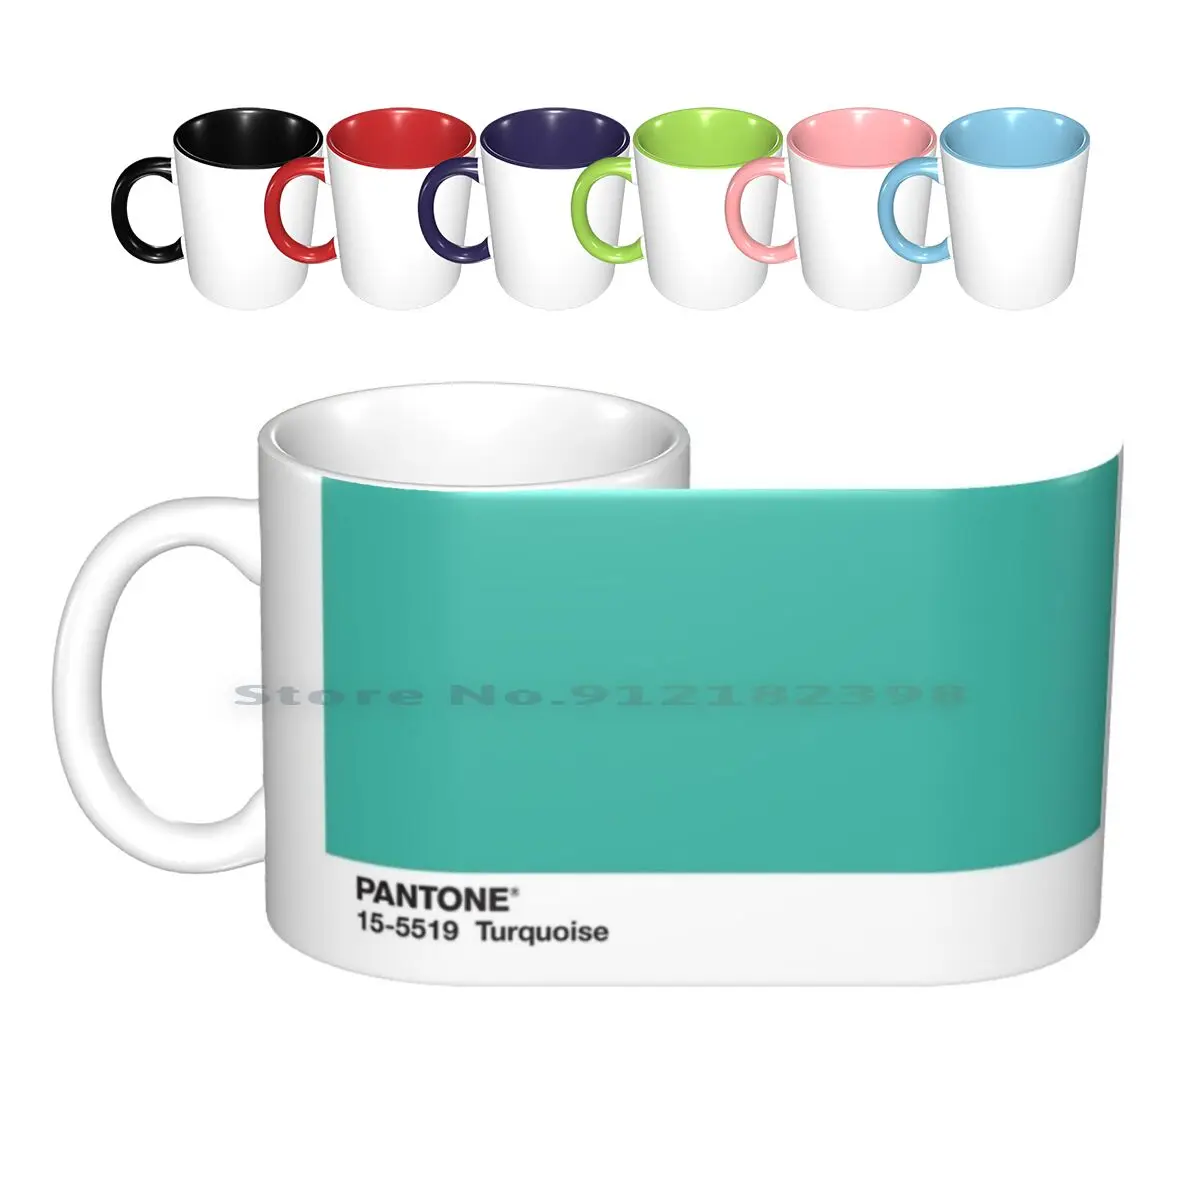 

Turquoise Pantone Ceramic Mugs Coffee Cups Milk Tea Mug Turquoise Teal Pantone Simple Minimal Minimalist Creative Trending